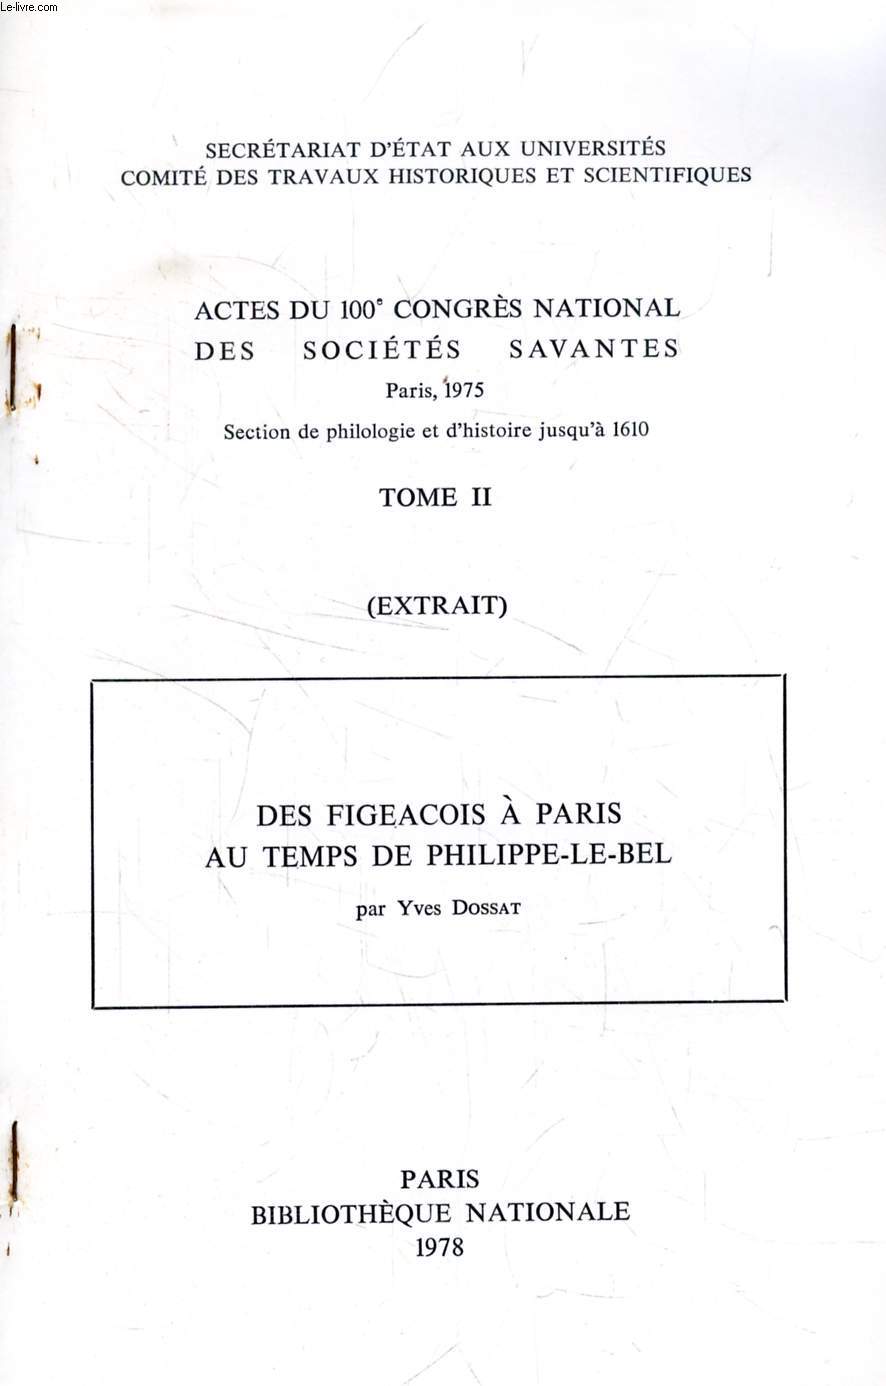 ACTES DU 100e CONGRES NATIONAL DES SOCIETES SAVANTES, TOME II (EXTRAIT), DES FIGEACOIS A PARIS AU TEMPS DE PHILIPPE-LE-BEL